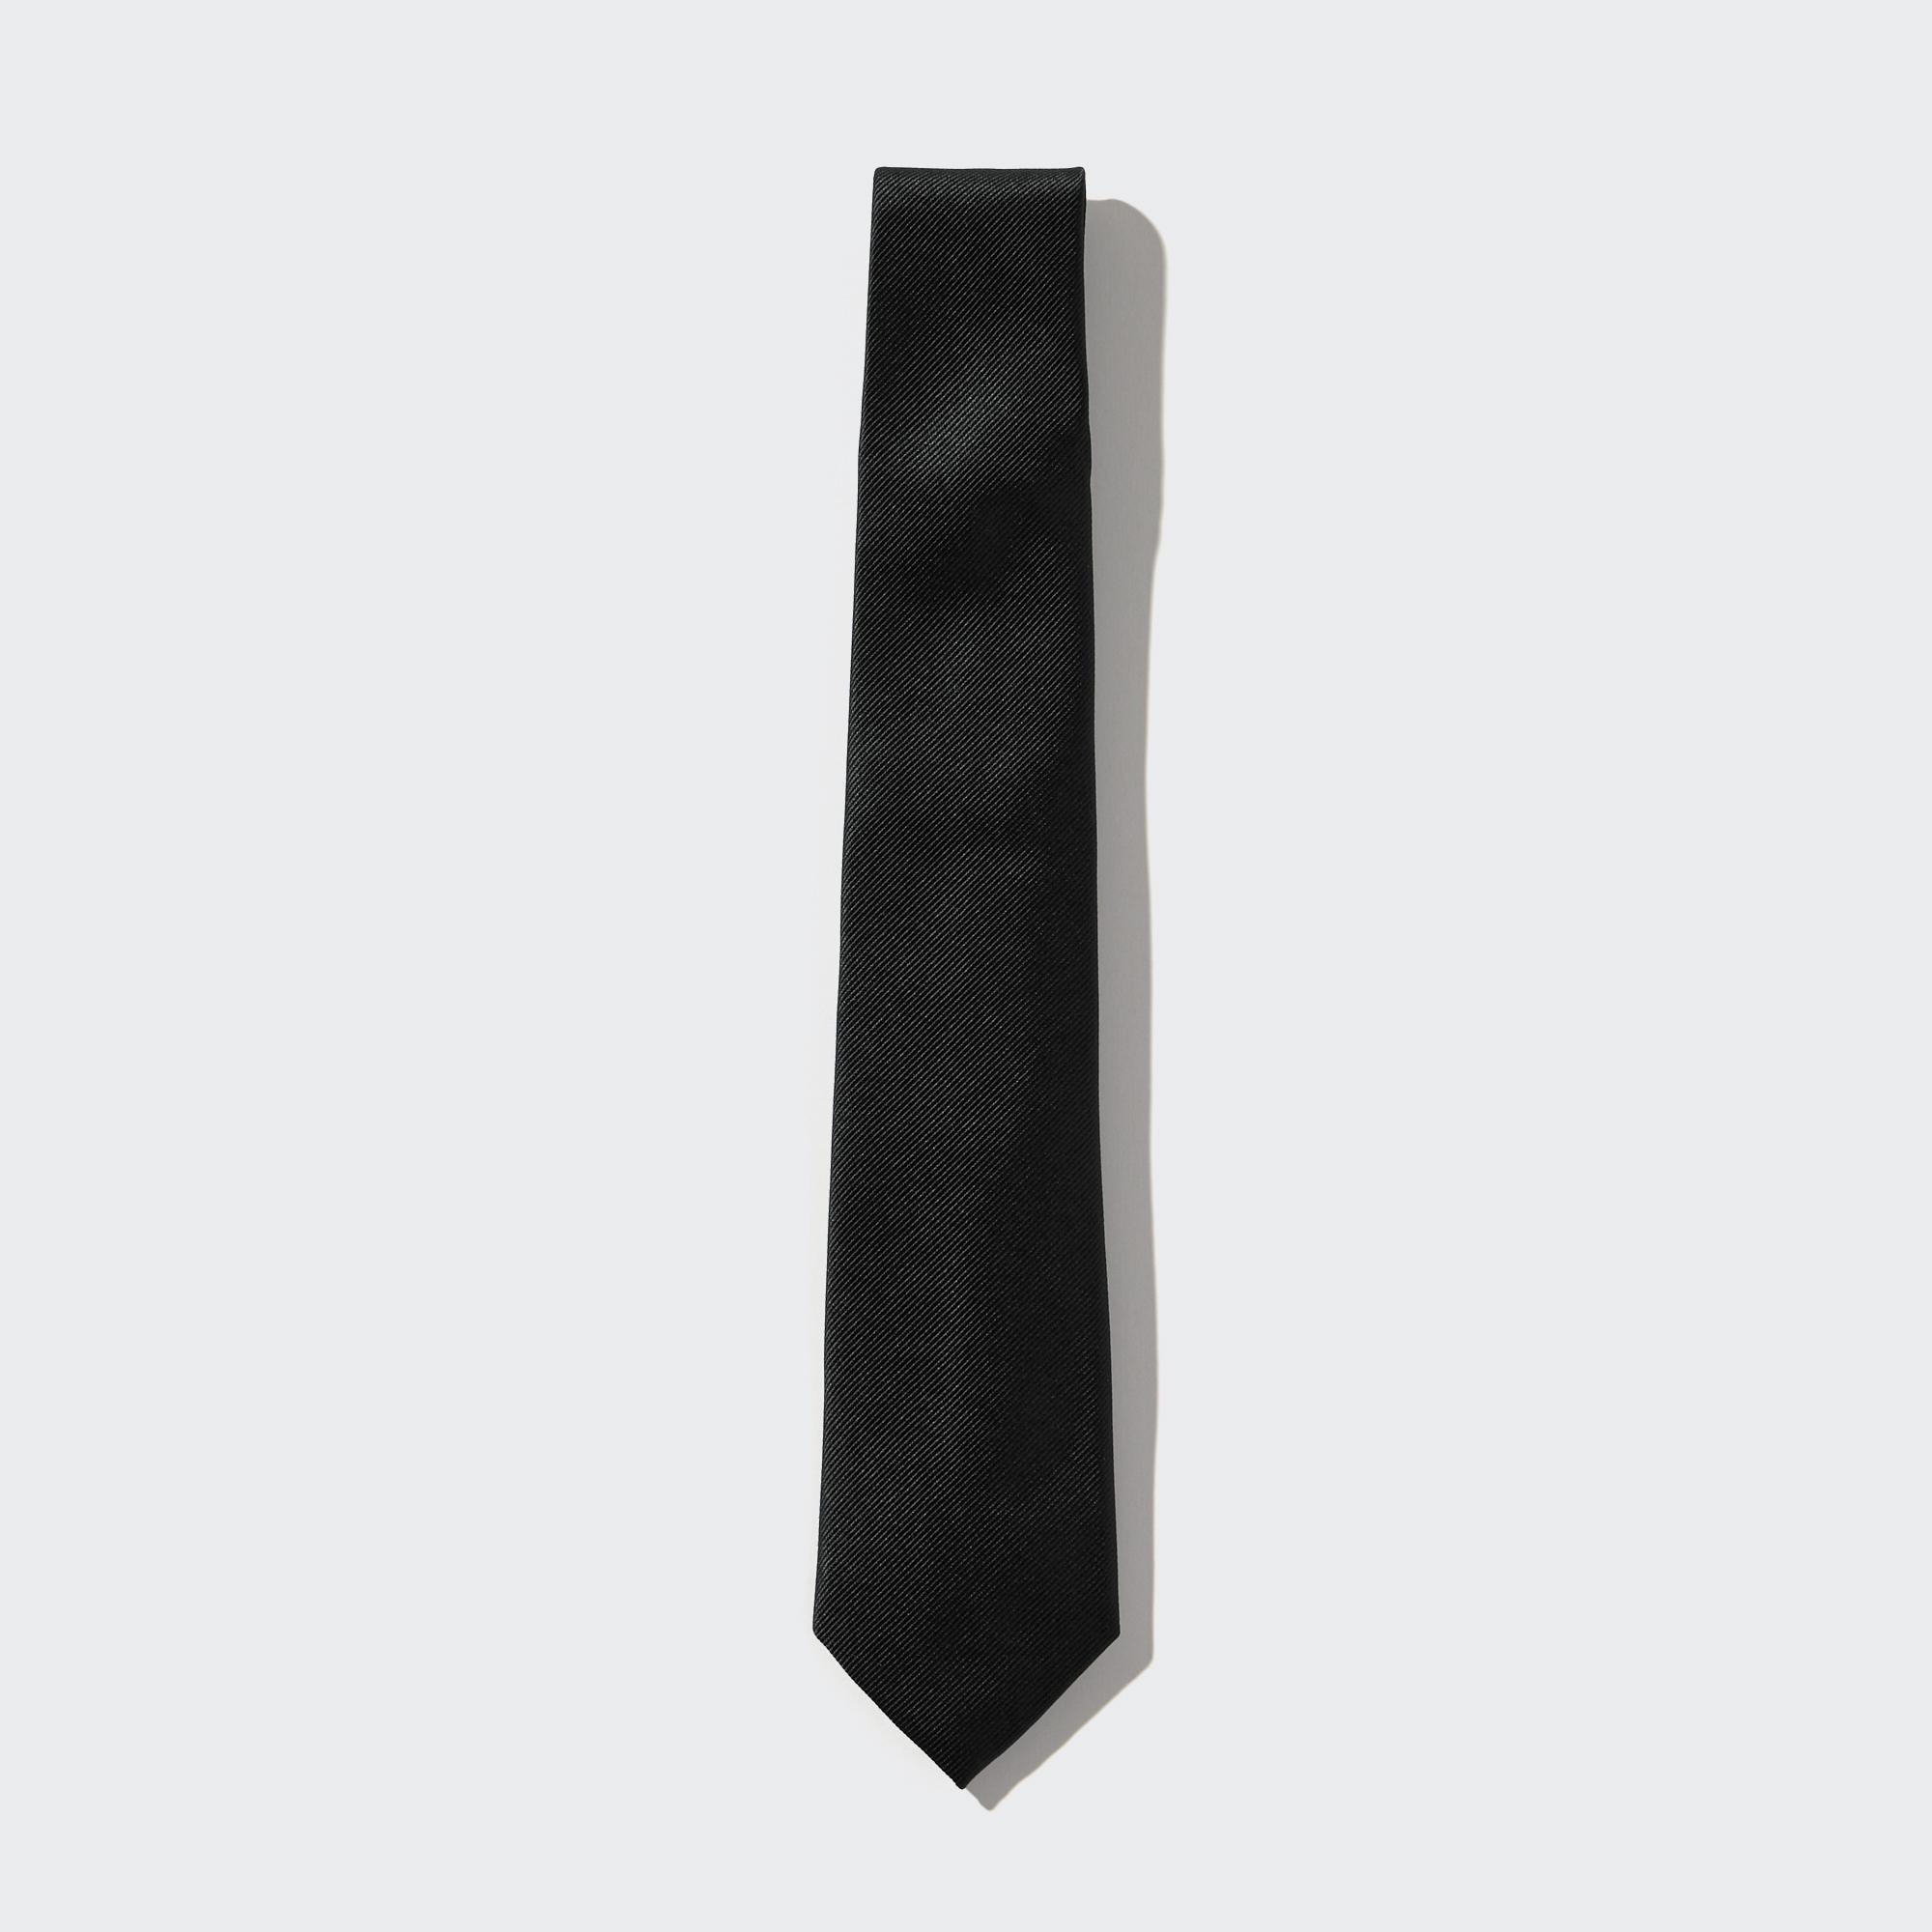 шелковый мужской галстук hi tie черный Галстук Uniqlo мужской шелковый, черный